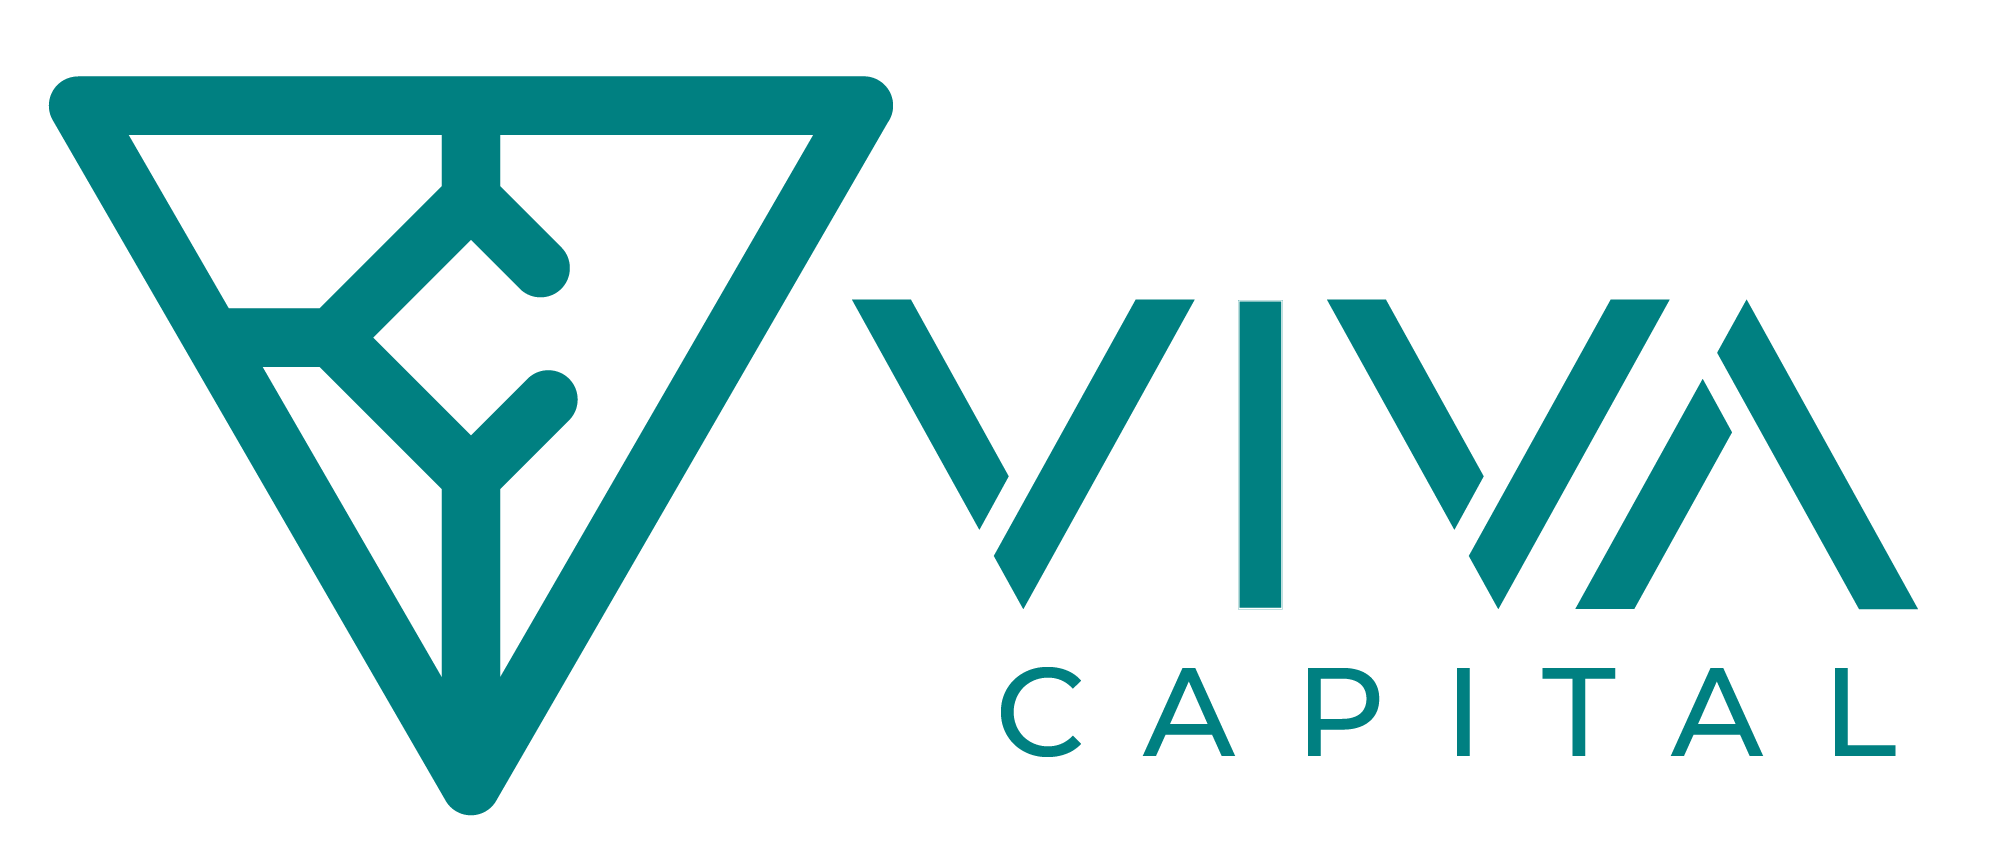 Viva Capital